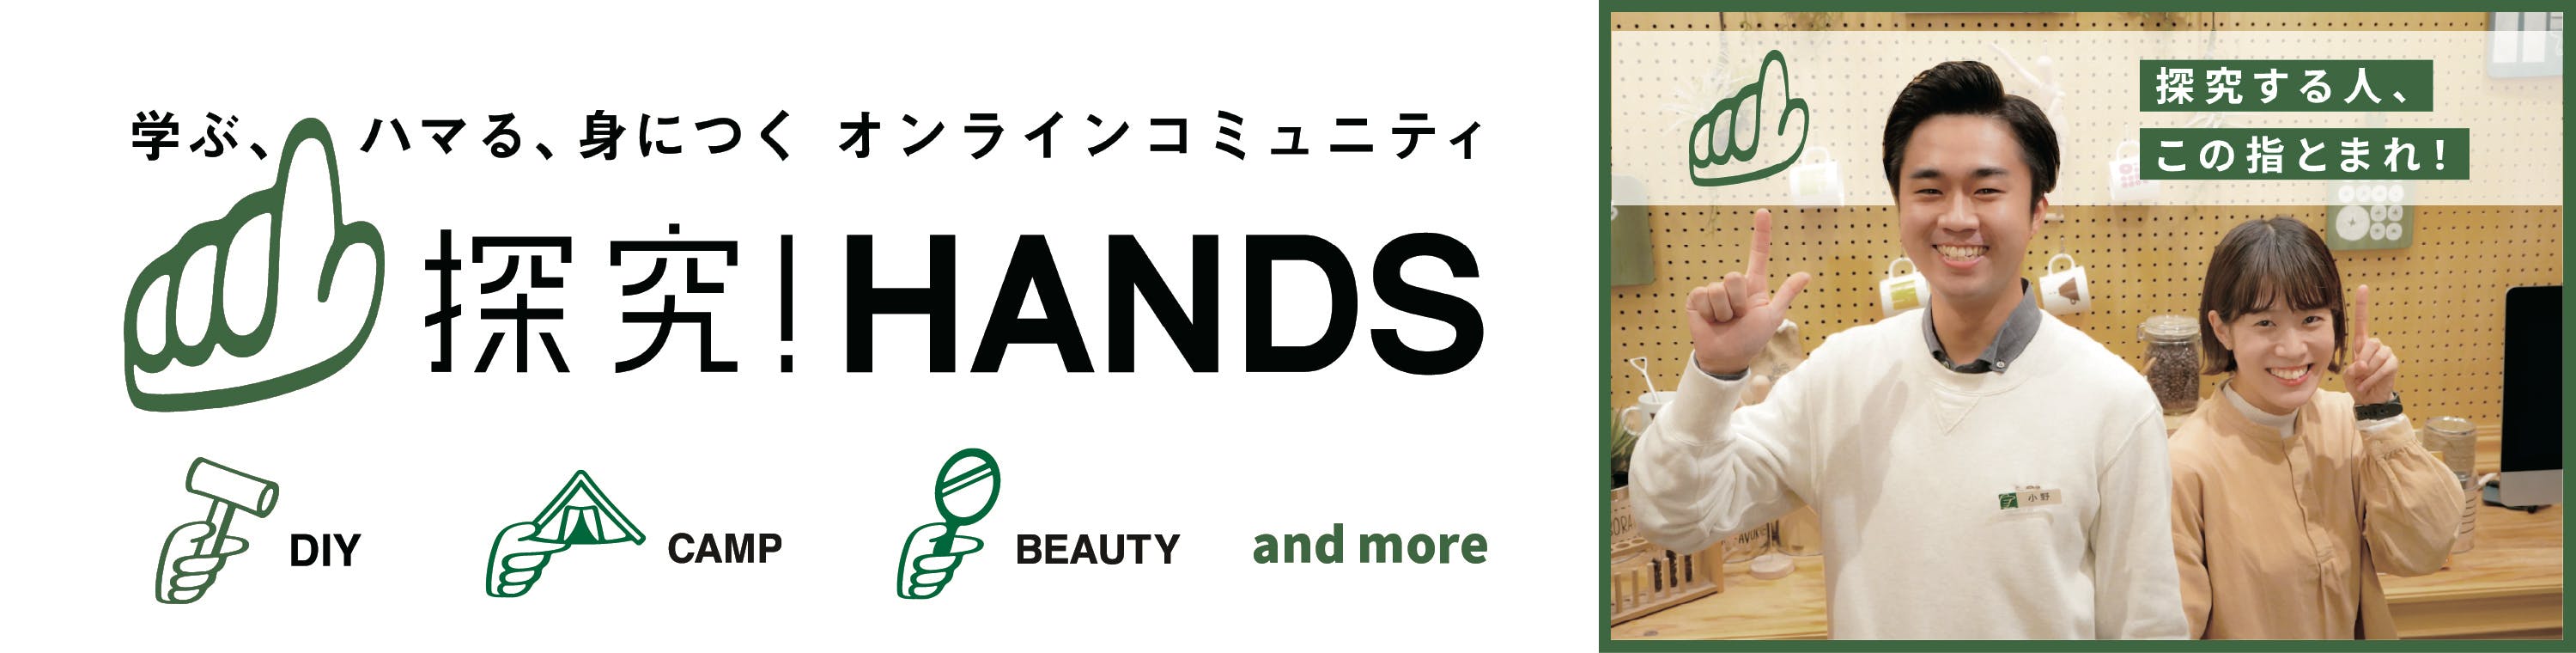 探究！HANDS by (株)東急ハンズ